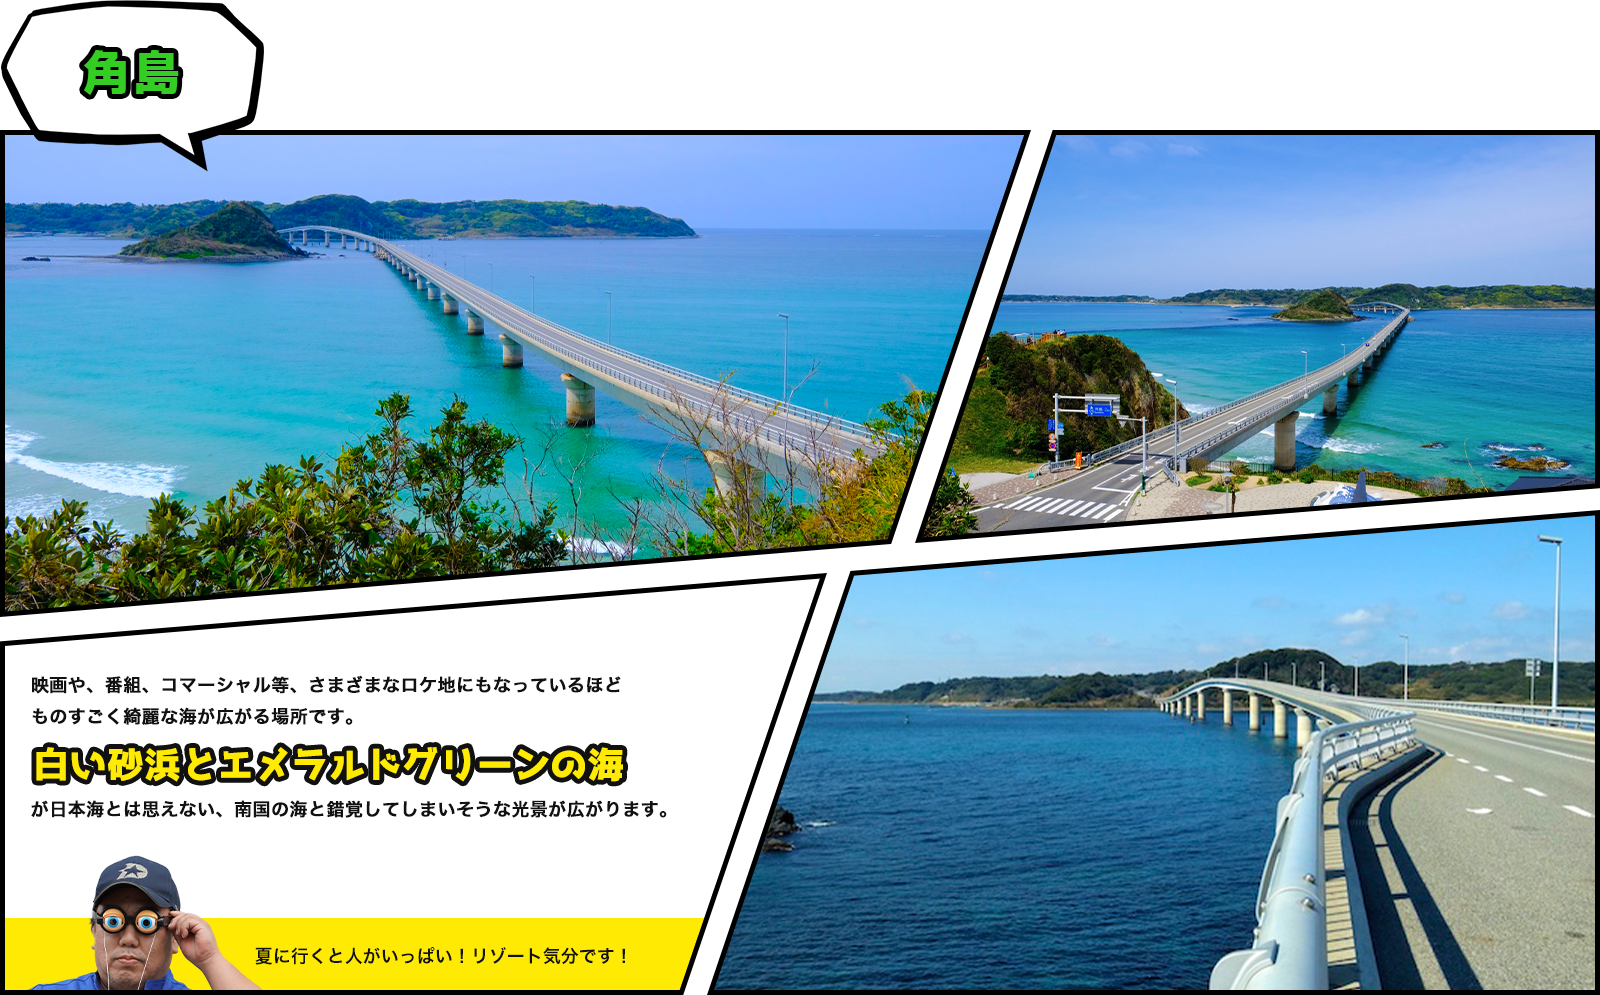 角島映画や、番組、コマーシャル等、さまざまなロケ地にもなっているほどものすごく綺麗な海が広がる場所です。